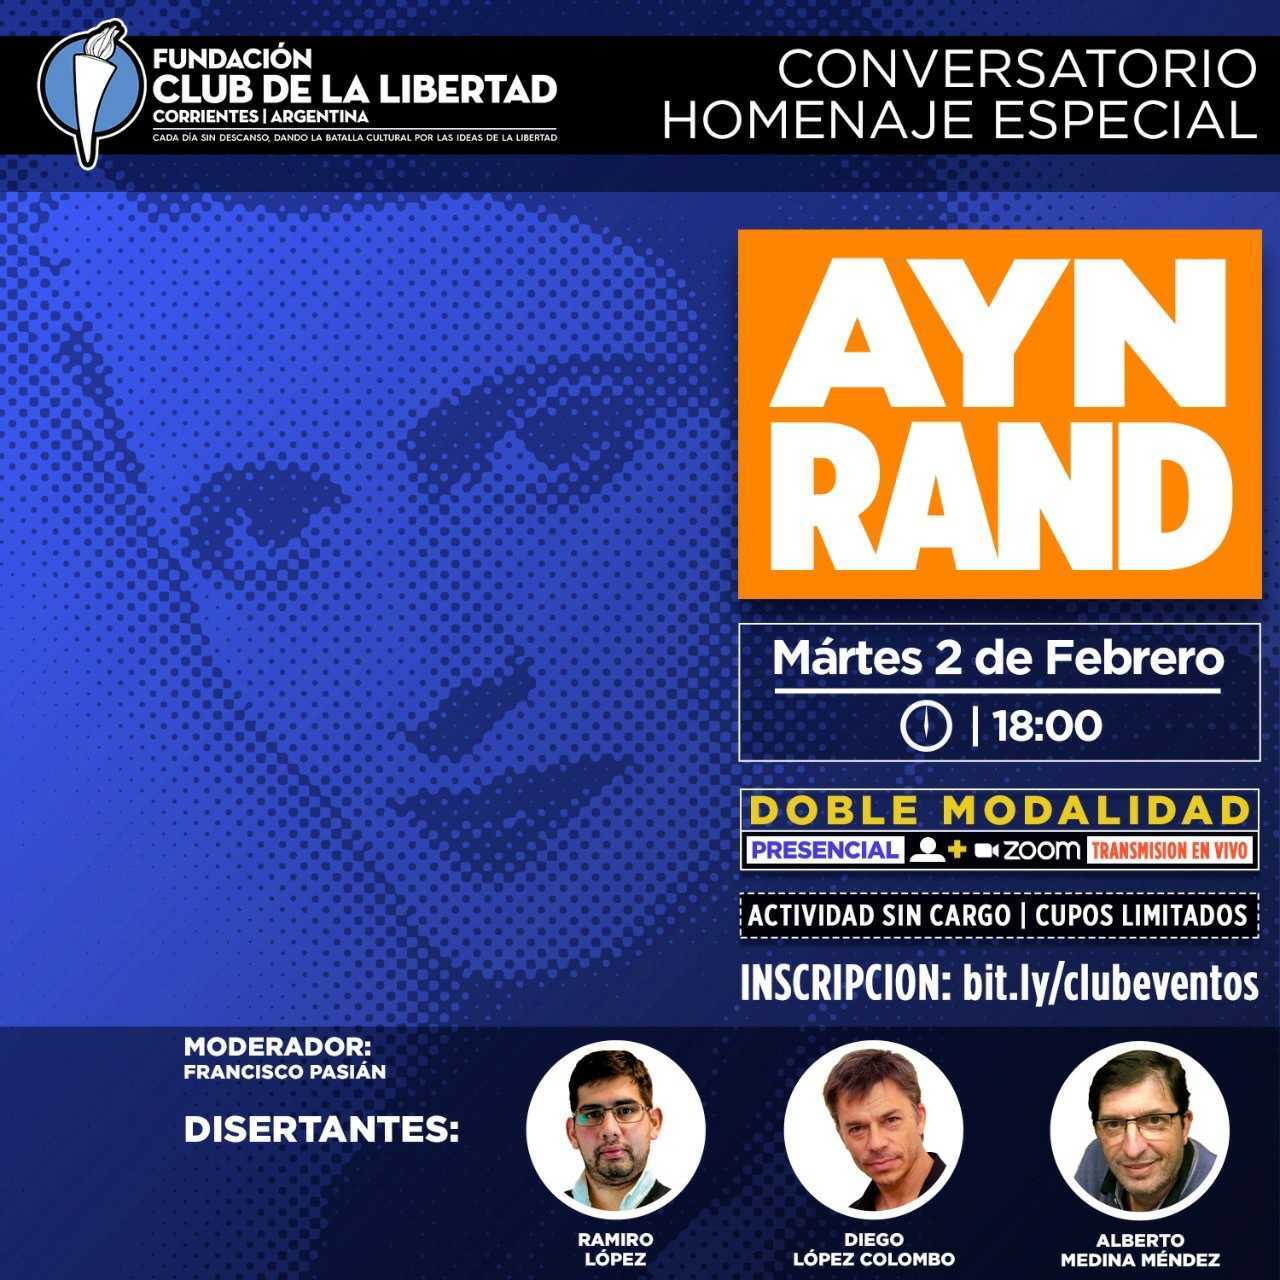 En este momento estás viendo Crónica del evento «Conversatorio homenaje Ayn Rand»